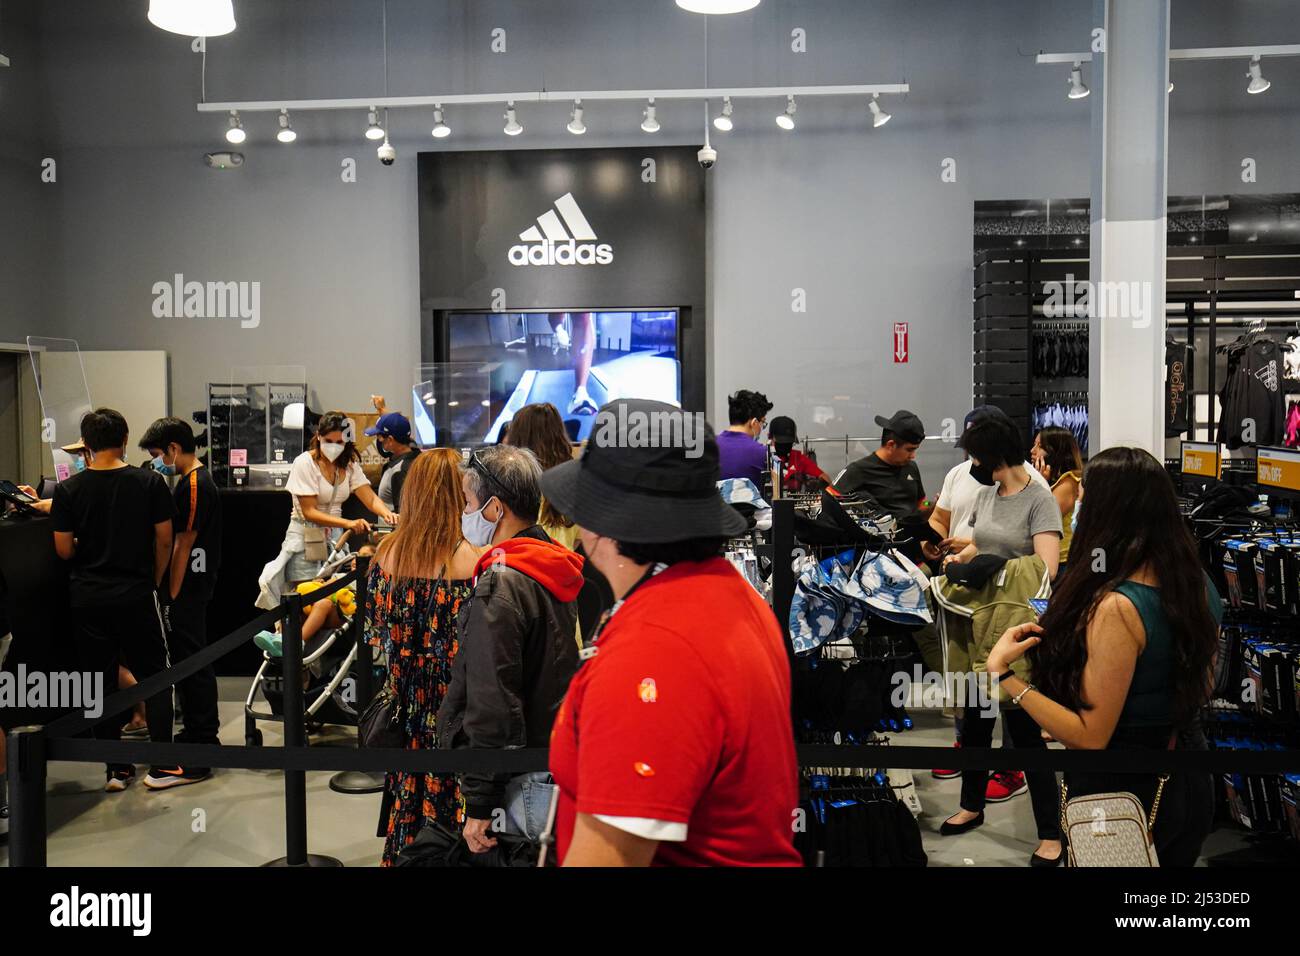 La gente ha visto lo shopping all'interno di un negozio Adidas presso gli  Outlets di Orange. Molte persone fanno acquisti presso gli Outlets di  Orange, per abbigliamento, scarpe, orologi, borse, e zaini